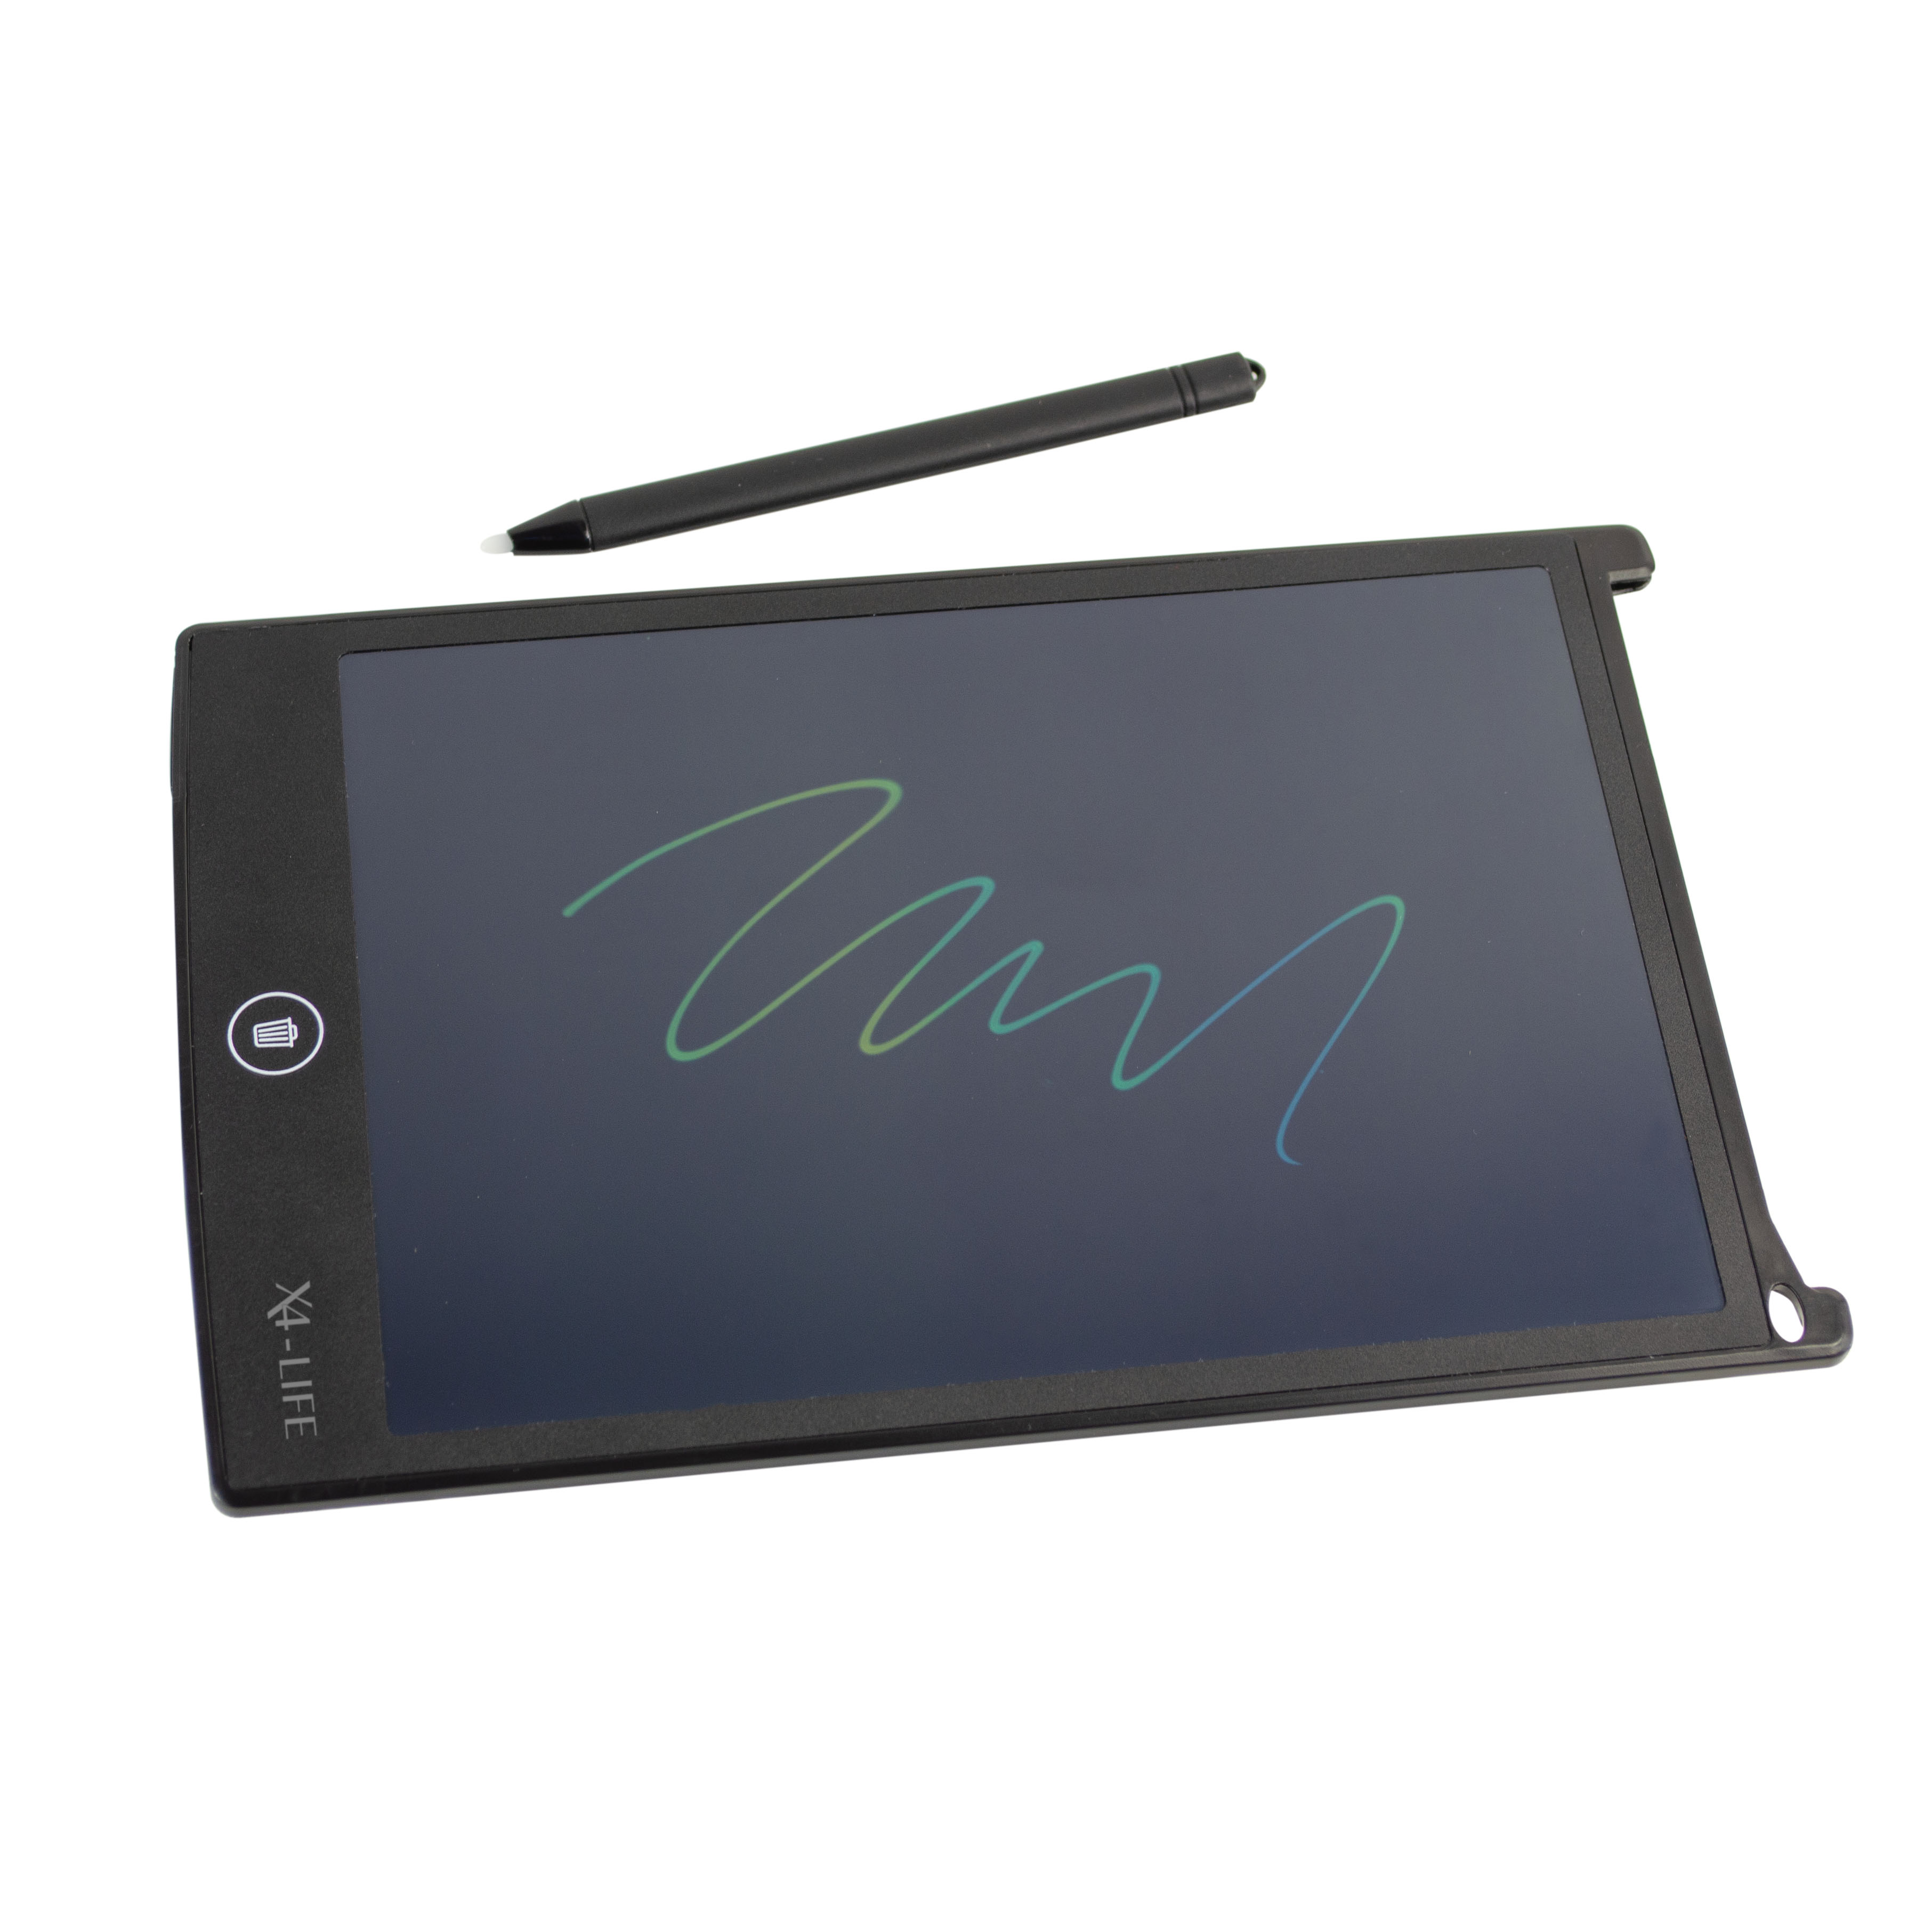 LCD Schreibtafel 8.5 Zoll: Elektronische Maltafel mit Stift, langlebiger Batterie - Ideal für Notizen, Kinder malen, Schule & Büro